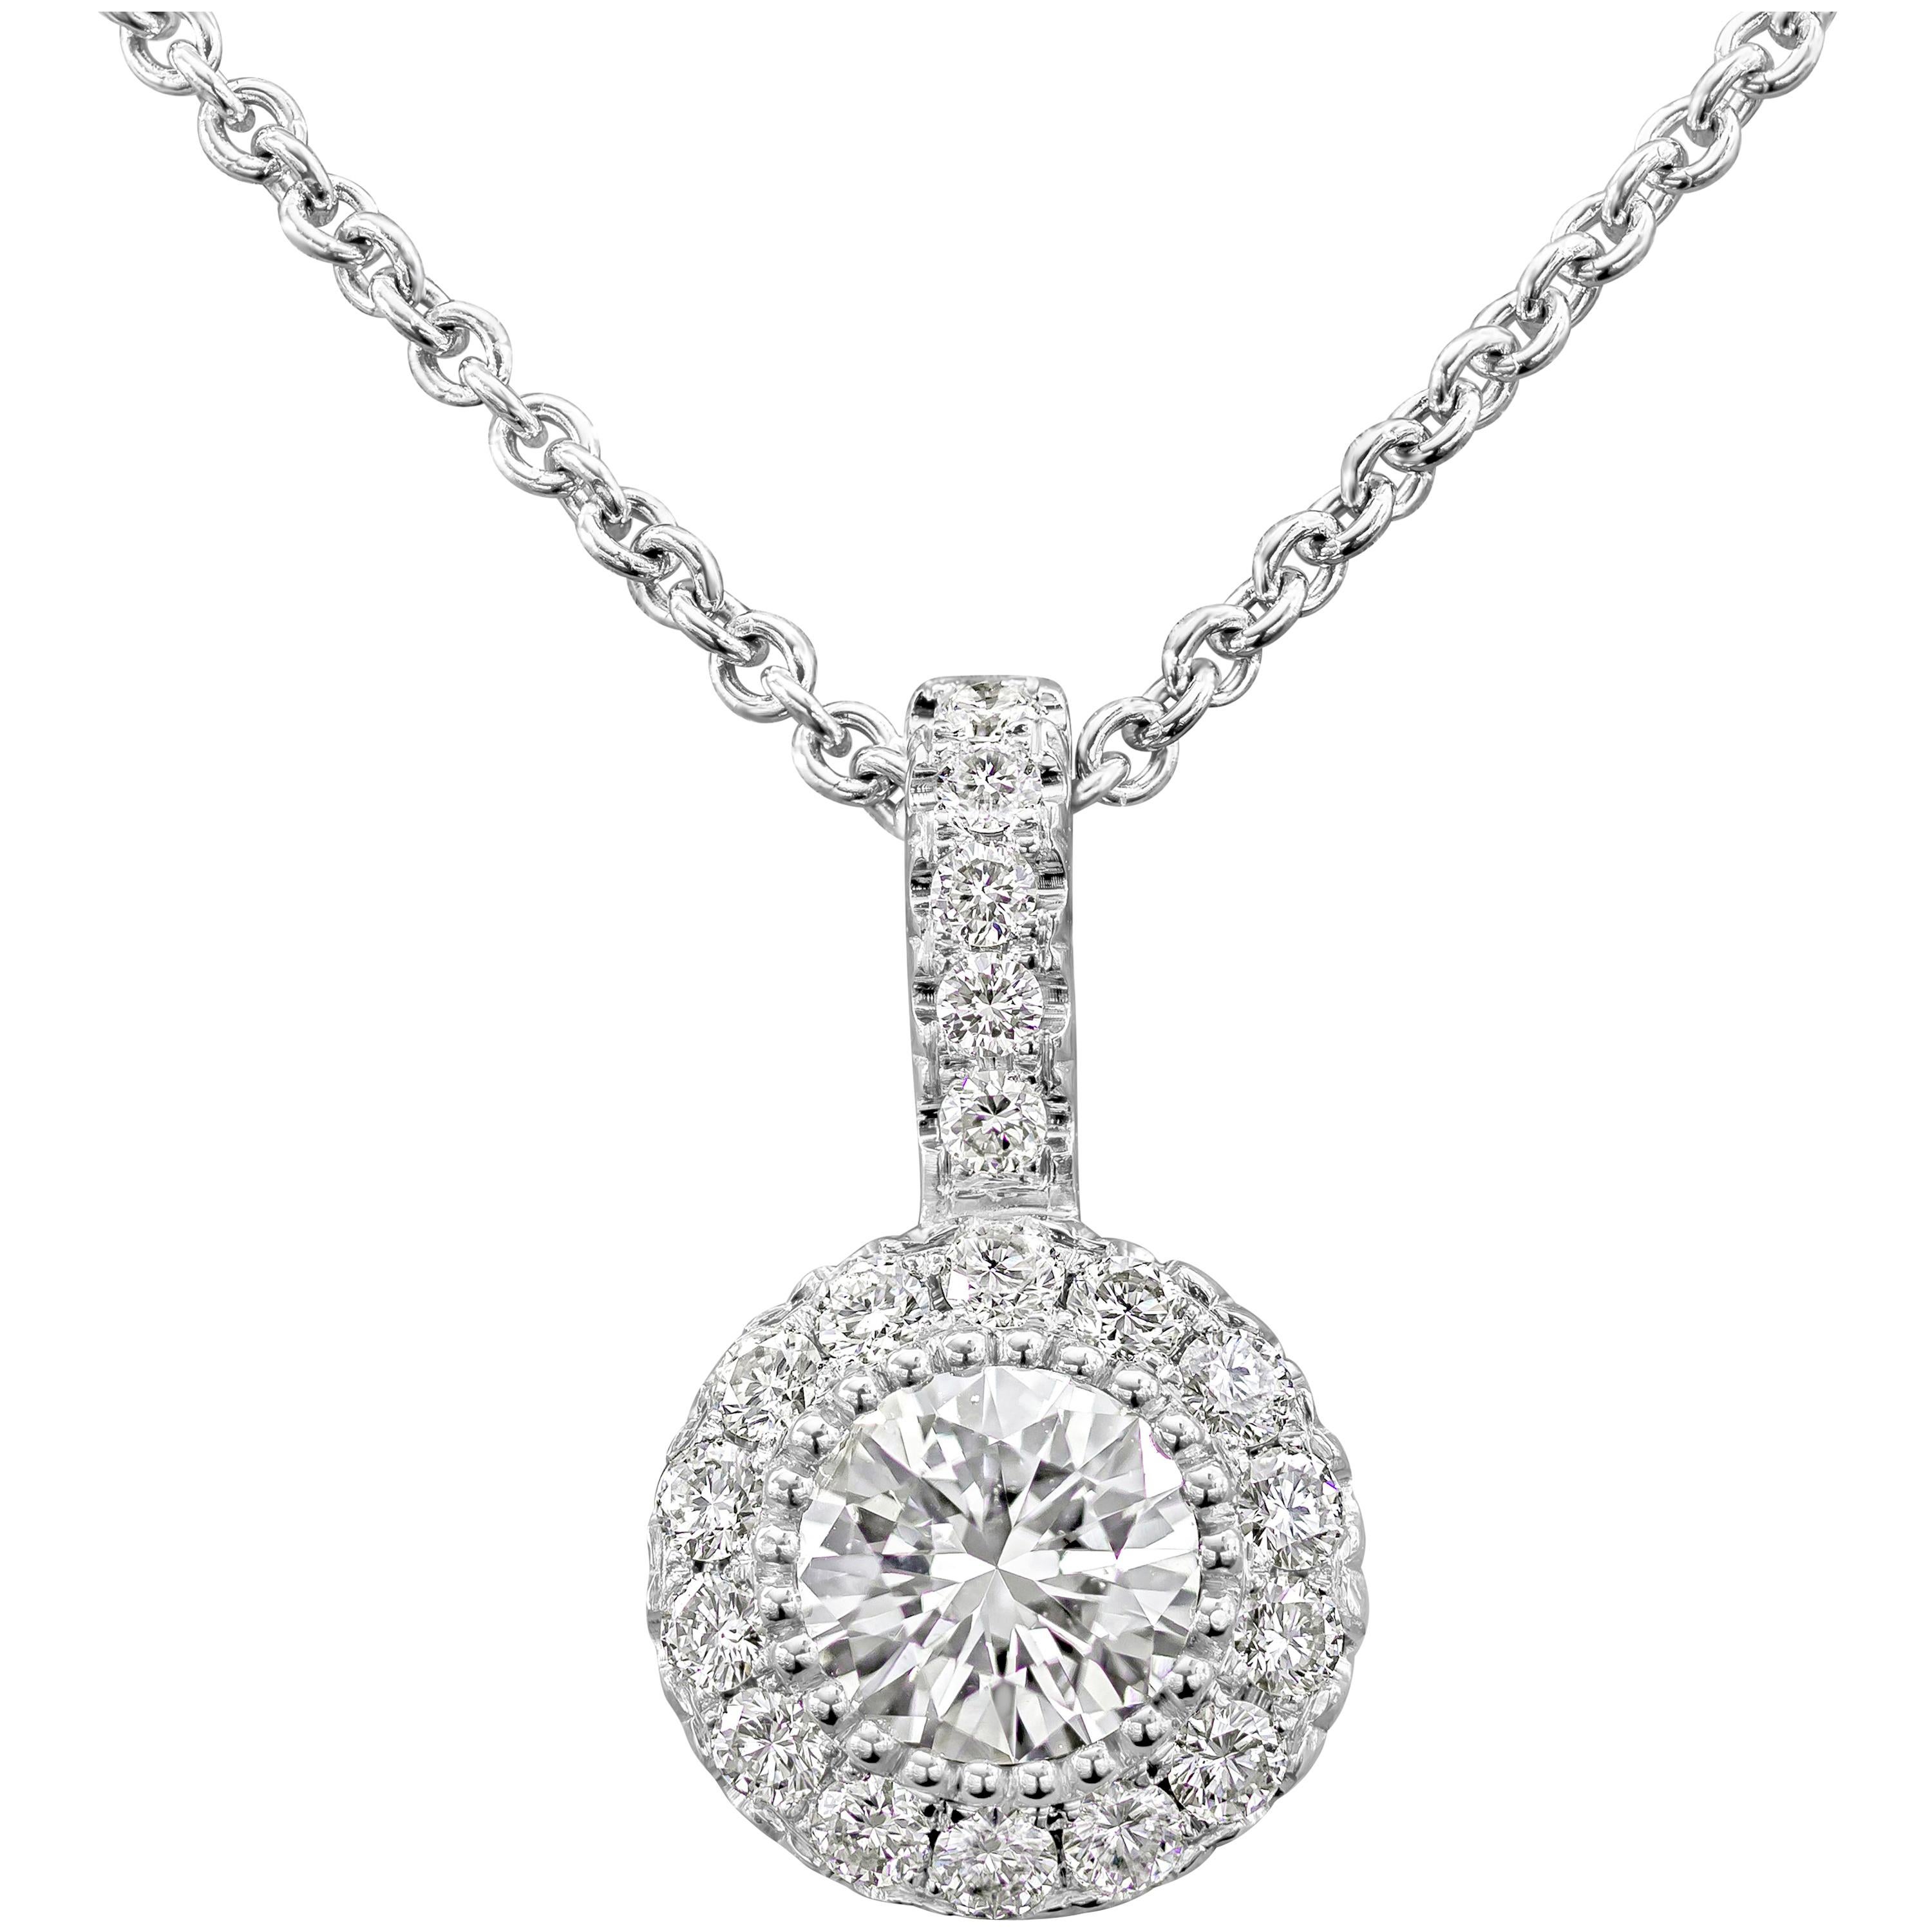 Roman Malakov, collier pendentif grappe de diamants ronds brillants de 0,45 carat au total